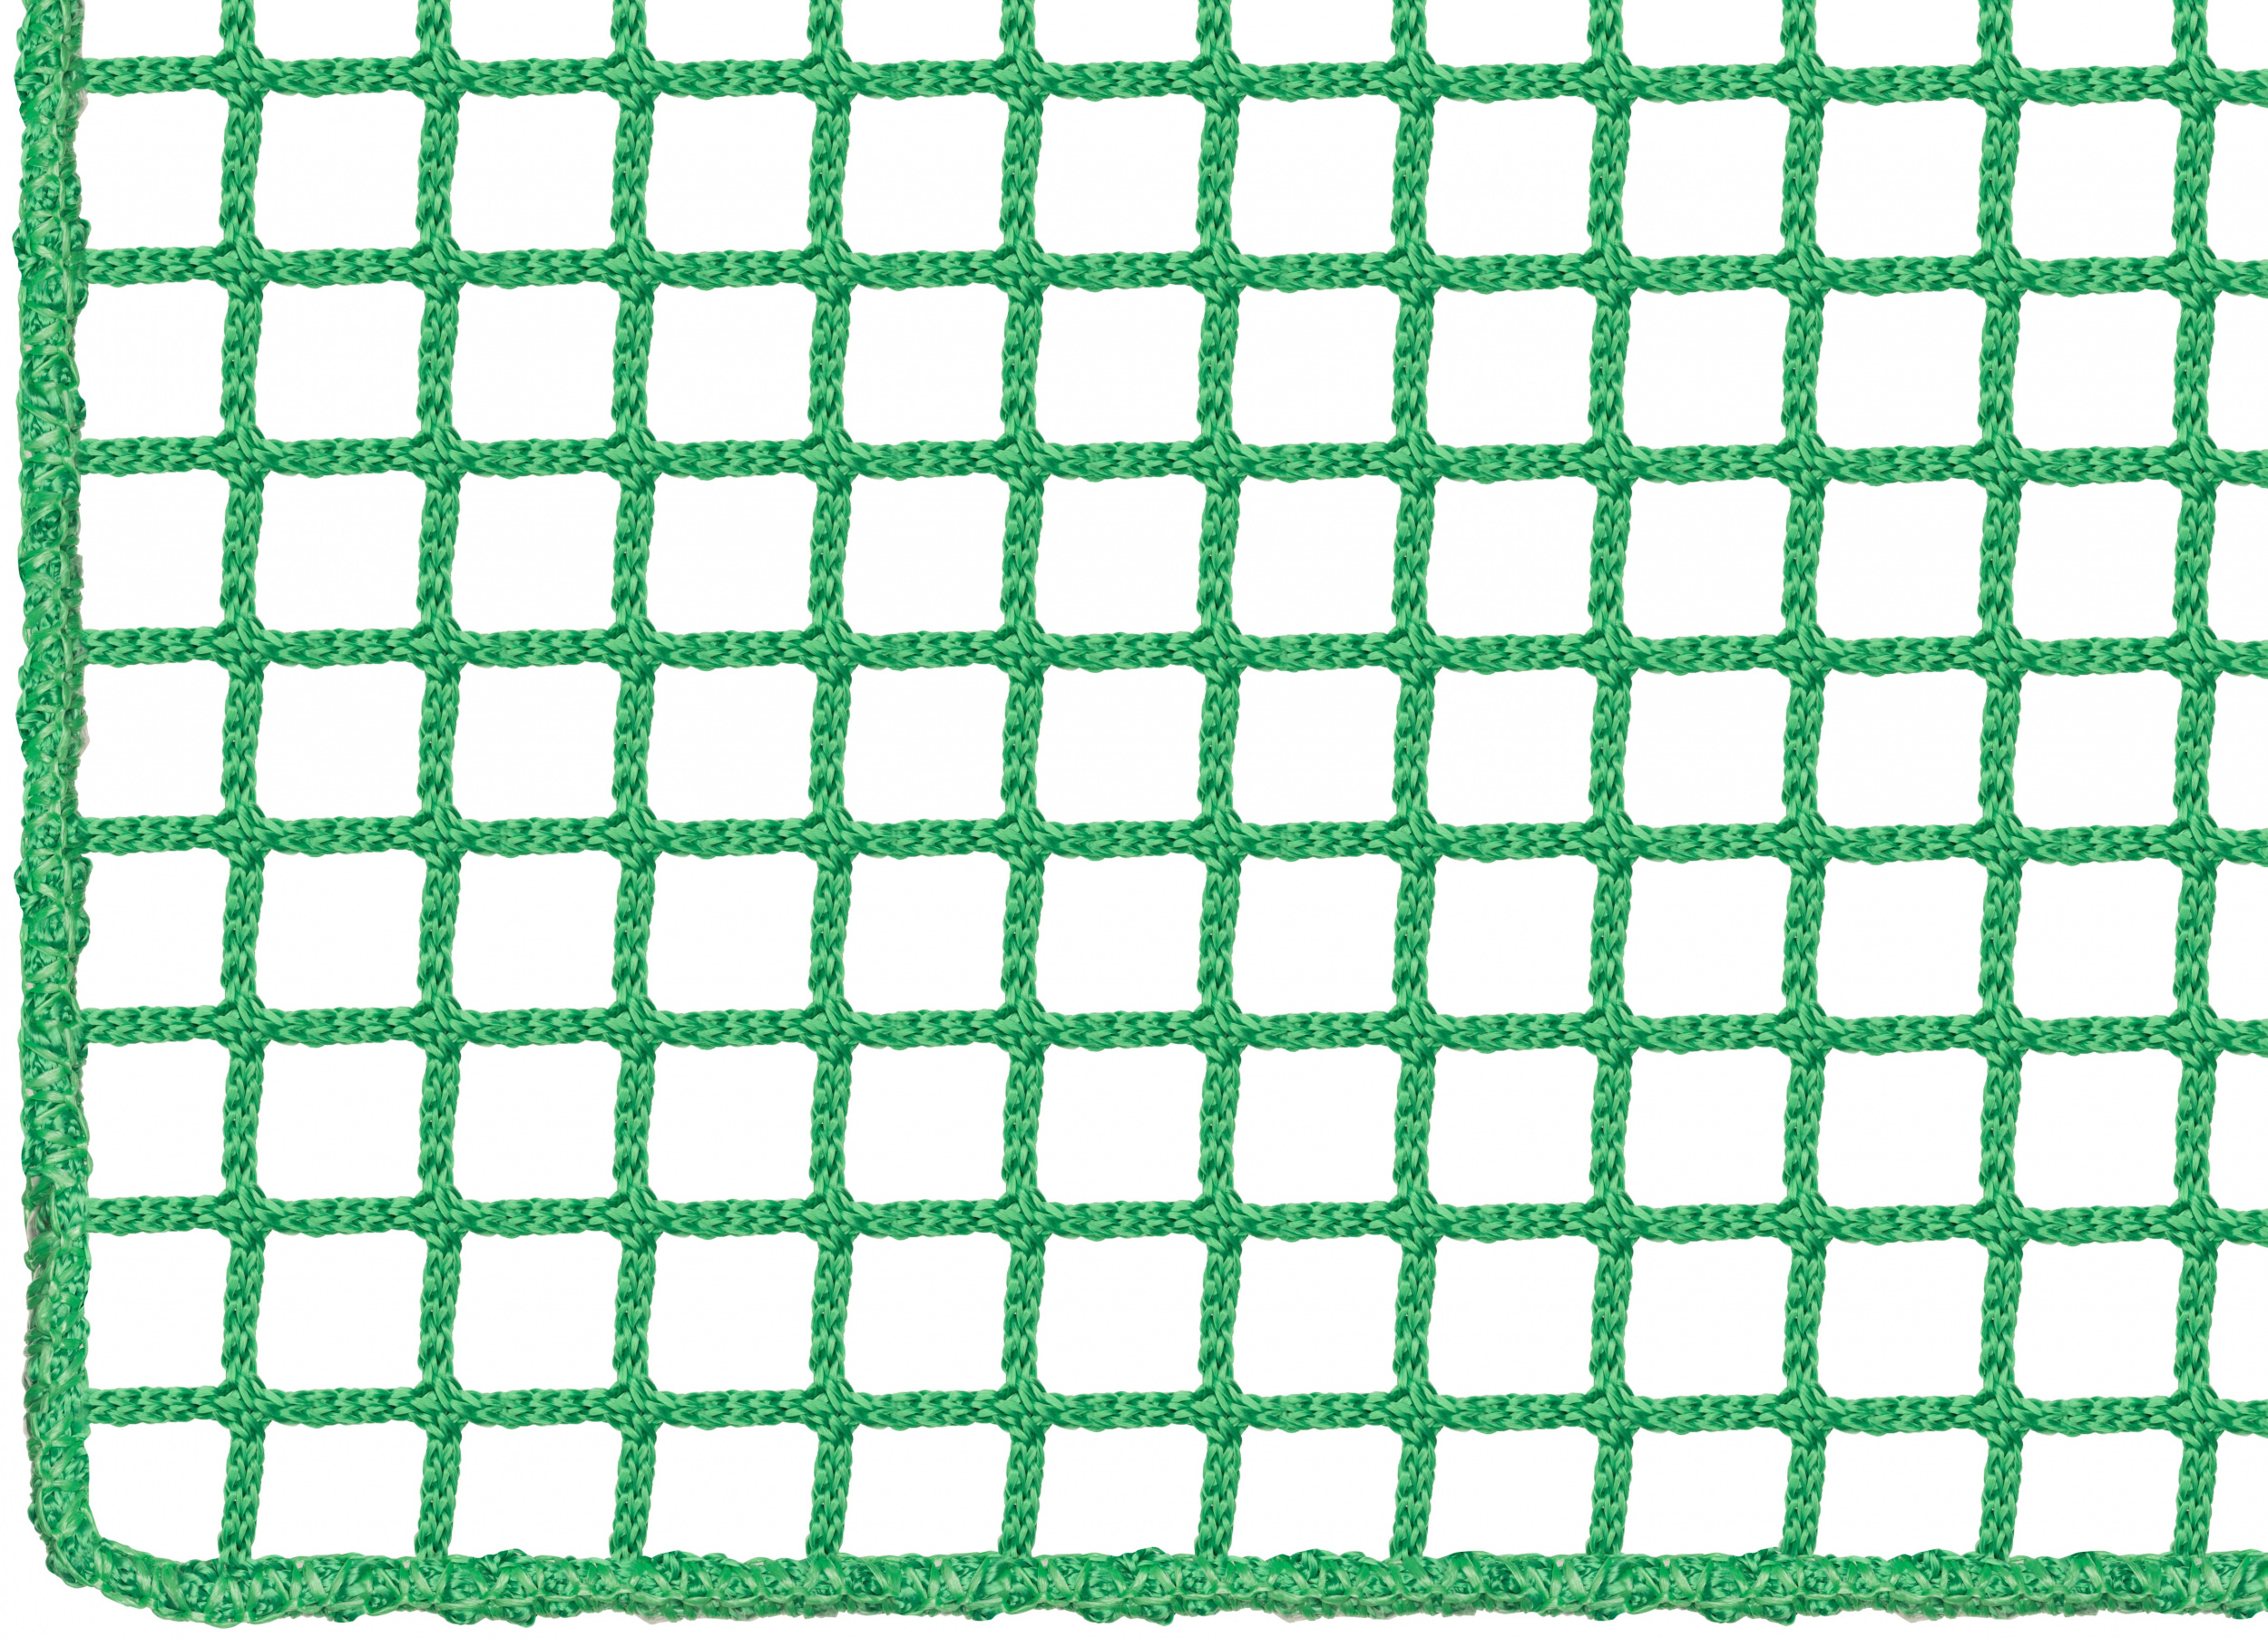 Netz nach Maß (per m²) 5,0/30 mm, grün